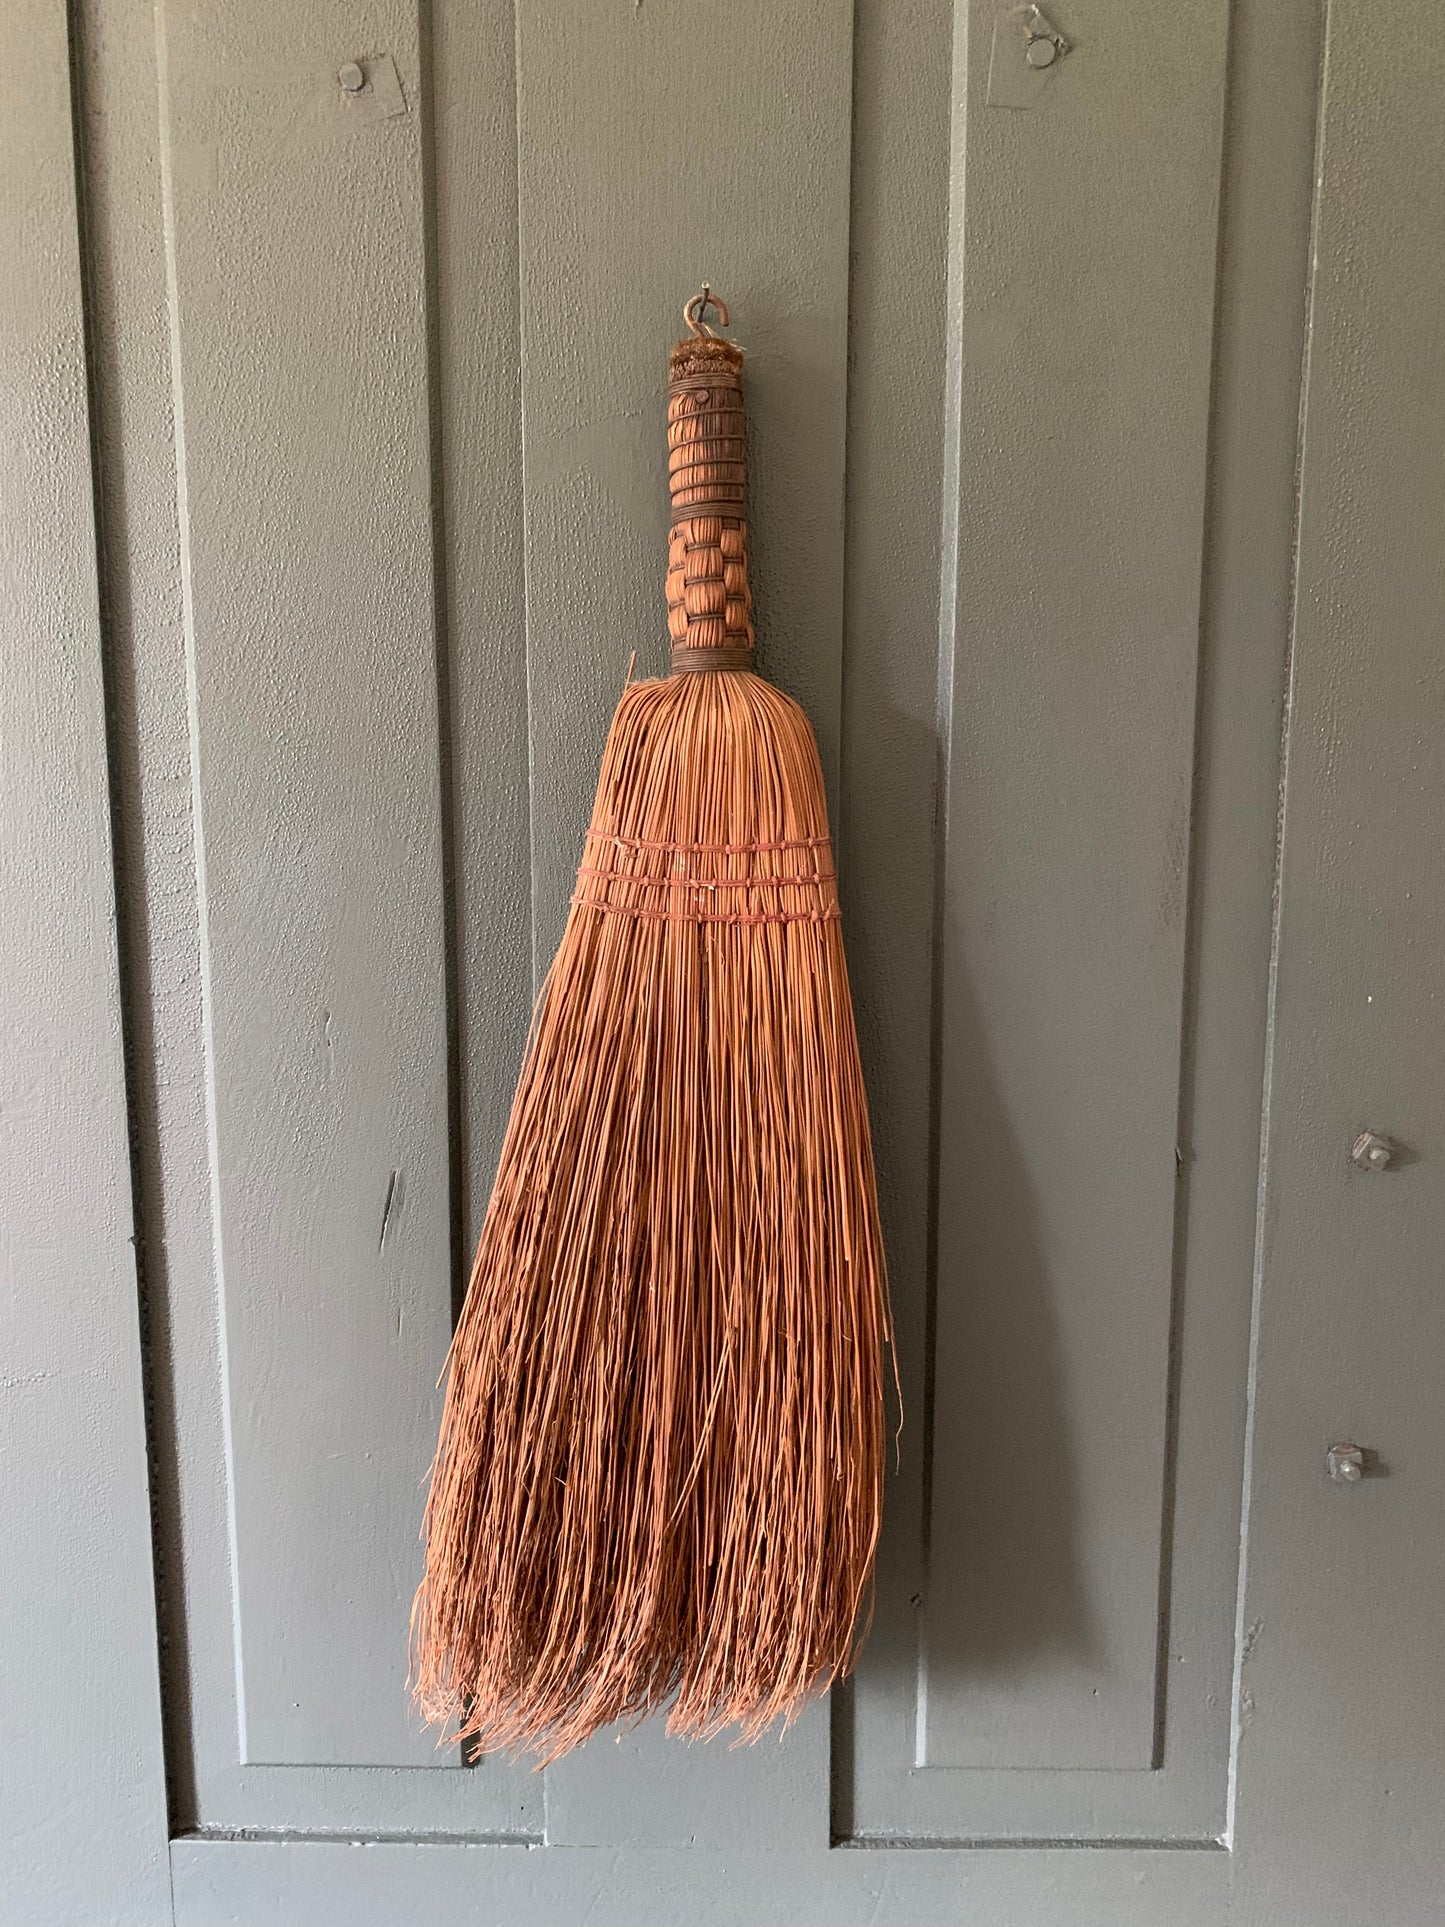 Vintage handmade broom